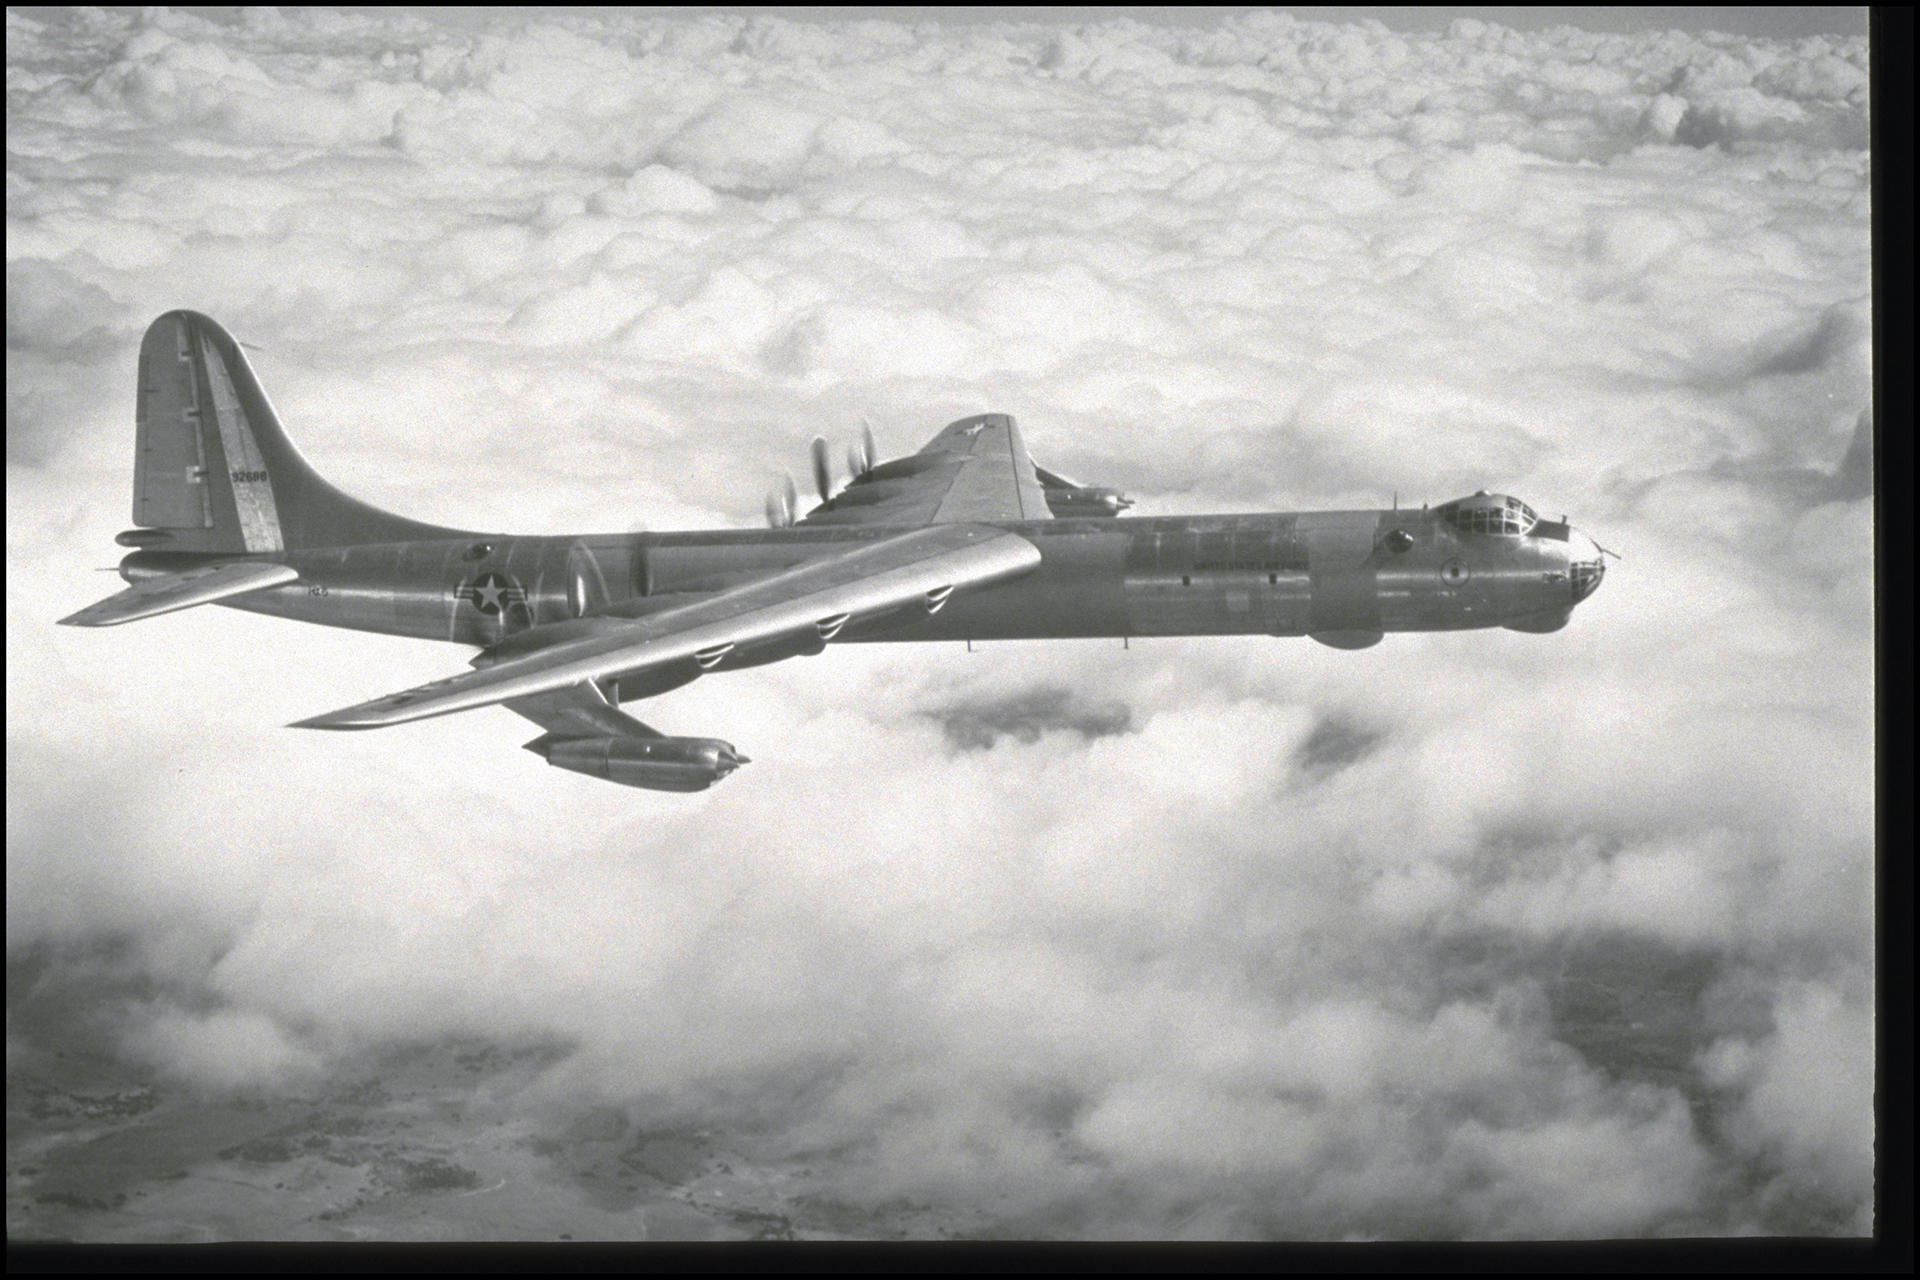 Big Iron - The B-36